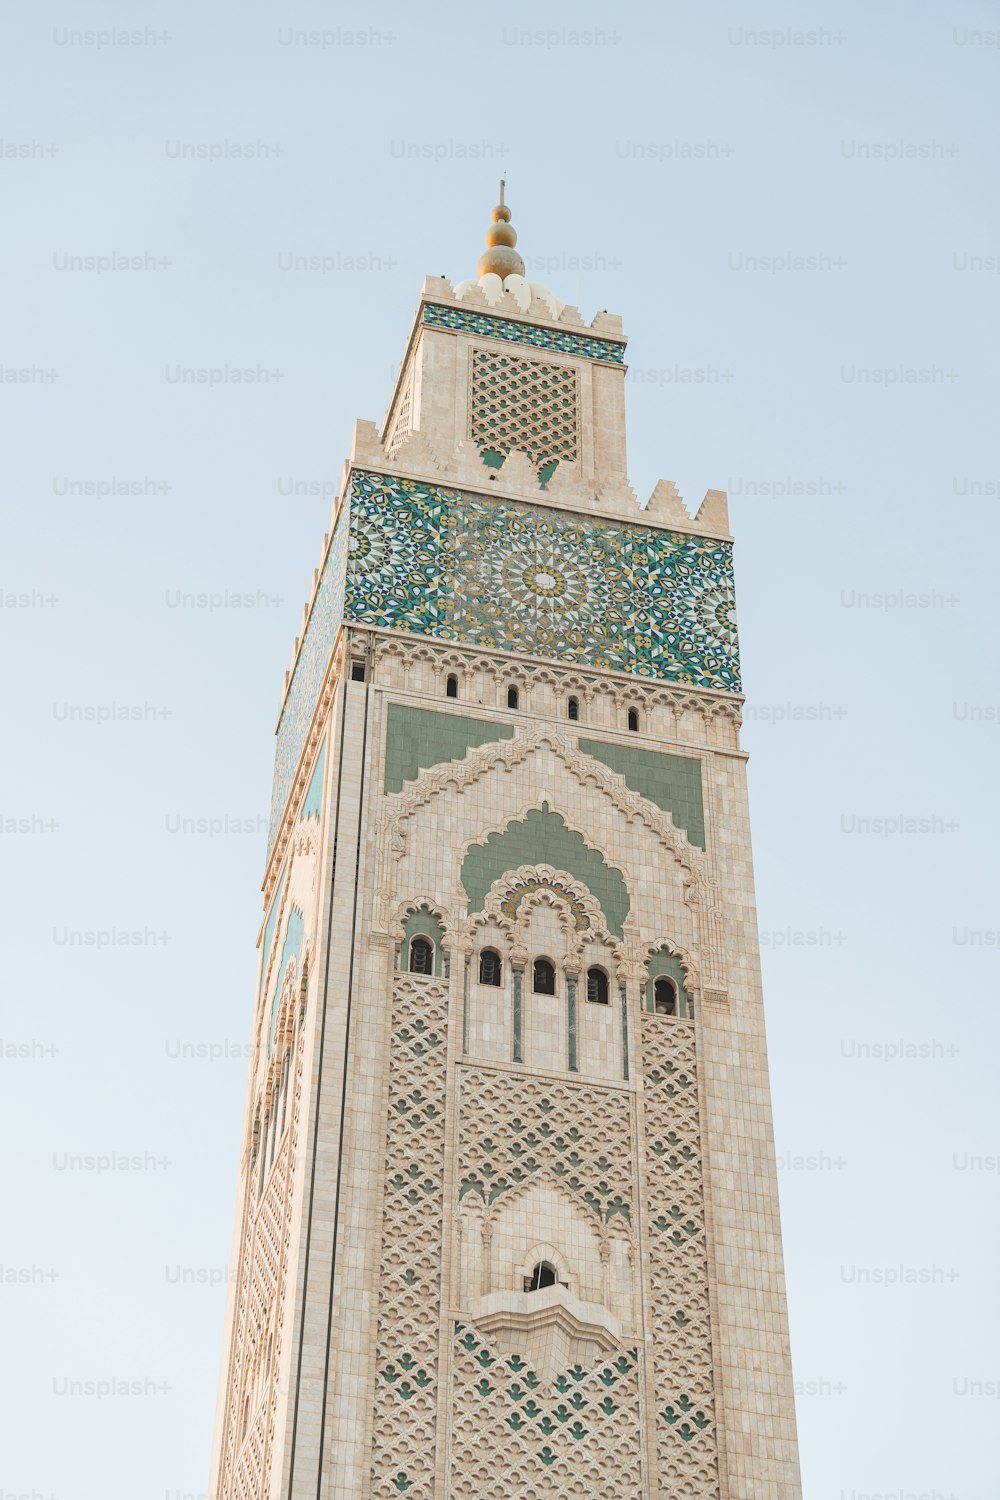 una torre alta con un reloj en la parte superior